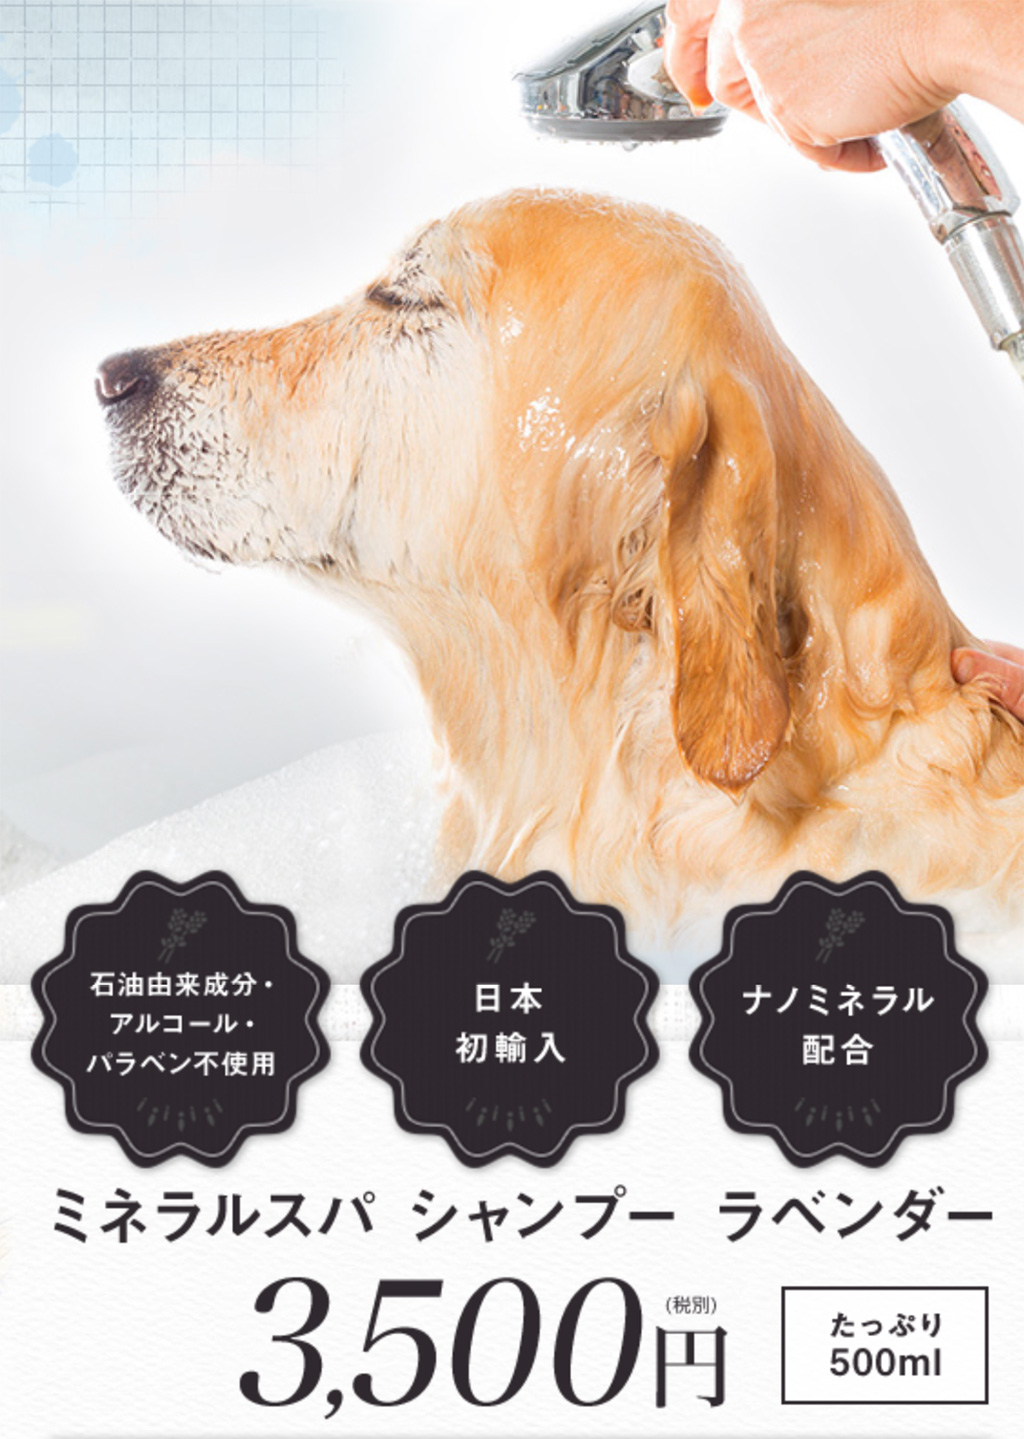 ペット大国アメリカ発のナノミネラル配合・安心安全の犬用シャンプー、ミネラルスパシャンプー exclusive